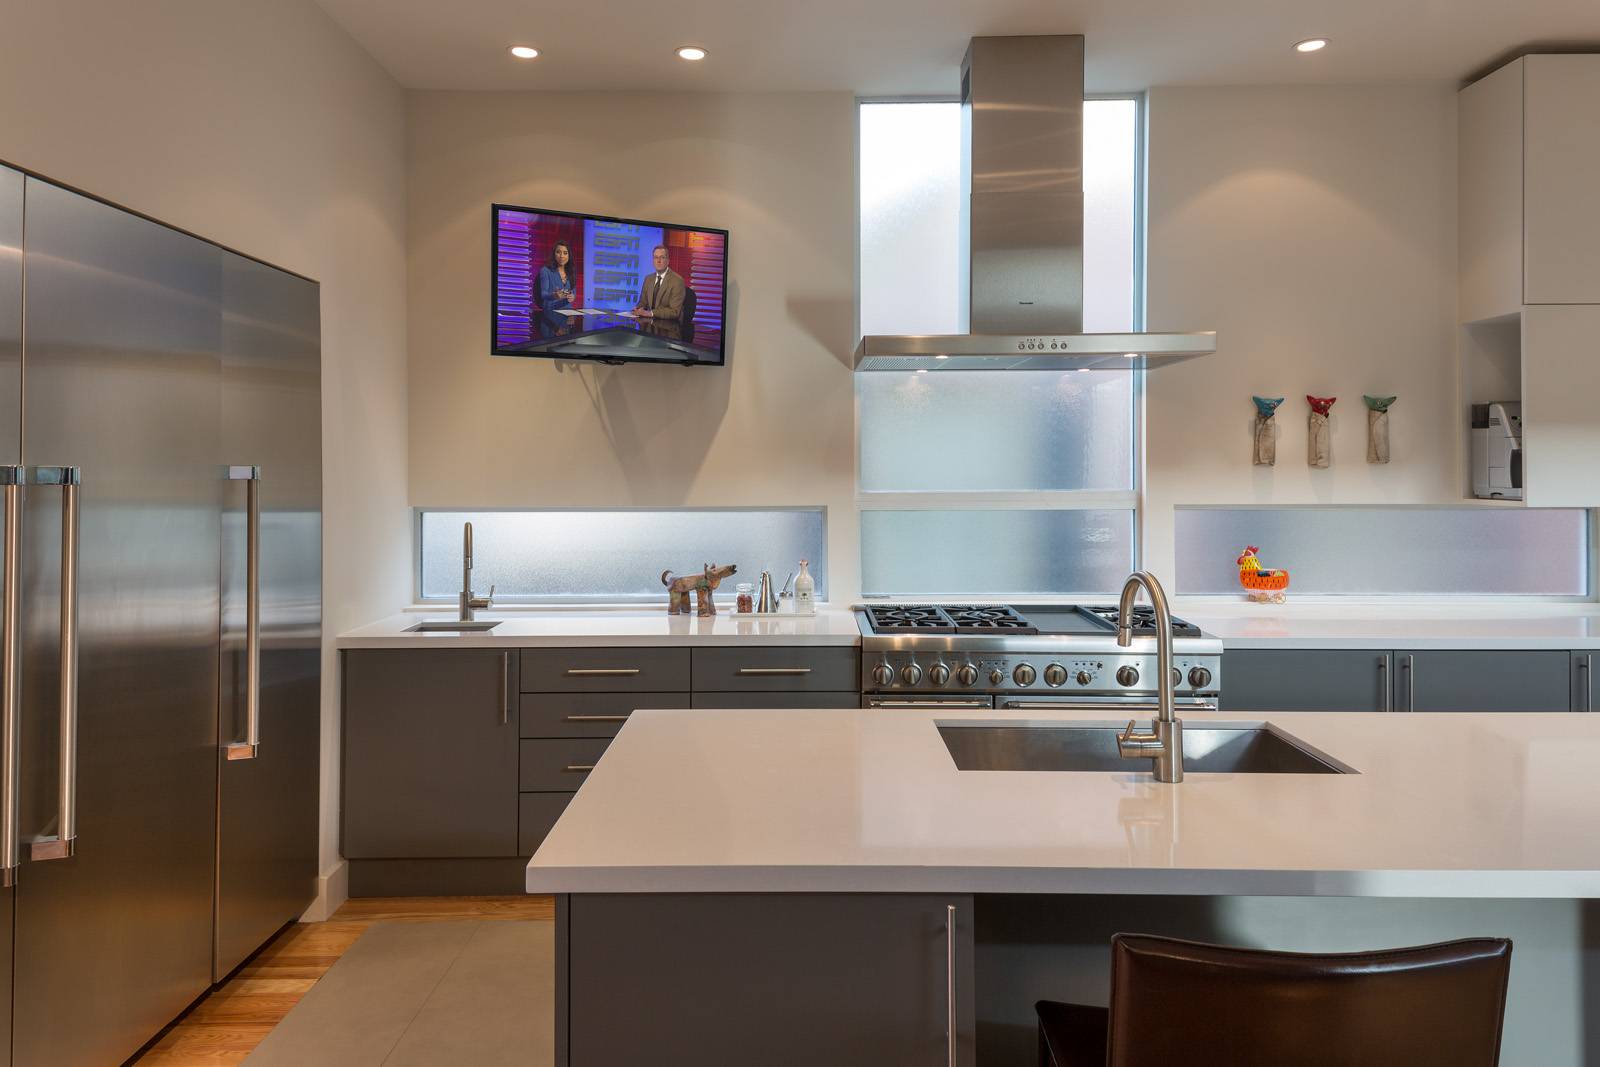 Нужен ли телевизор на кухне и как выбрать идеальный вариант?. cтатьи, тесты, обзоры